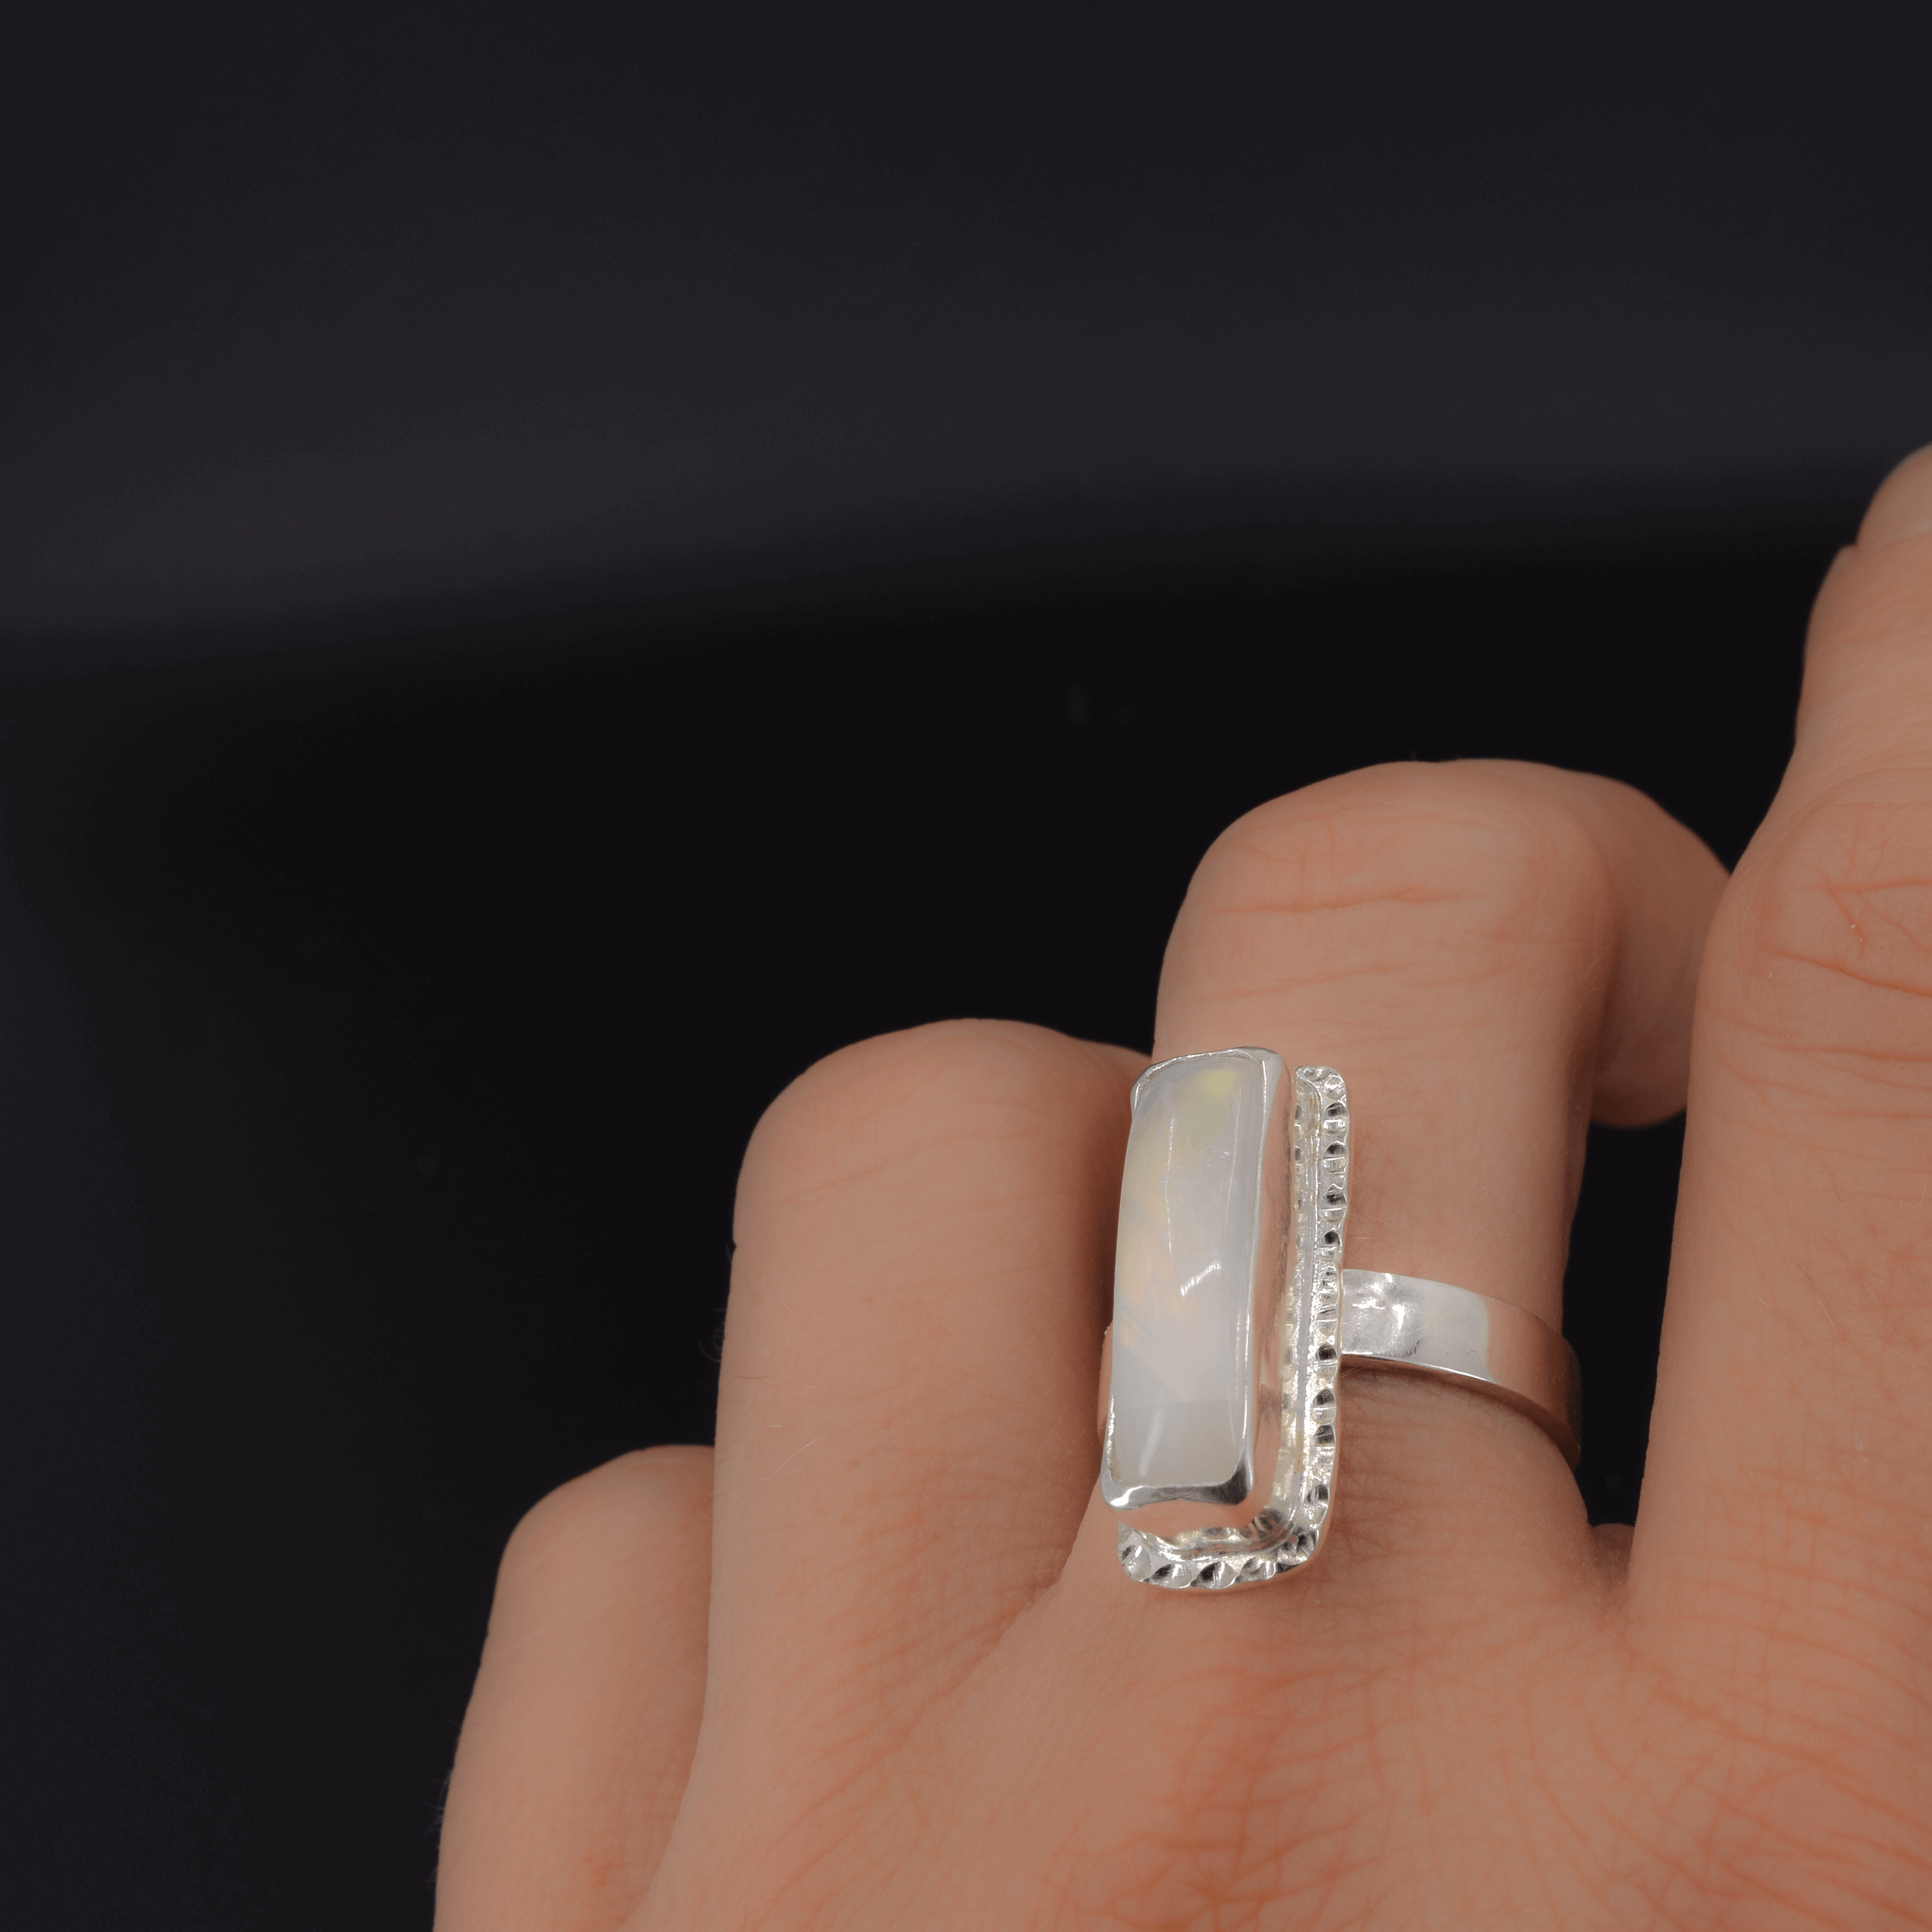 Rectangular rainbow moonstone ring shown on finger